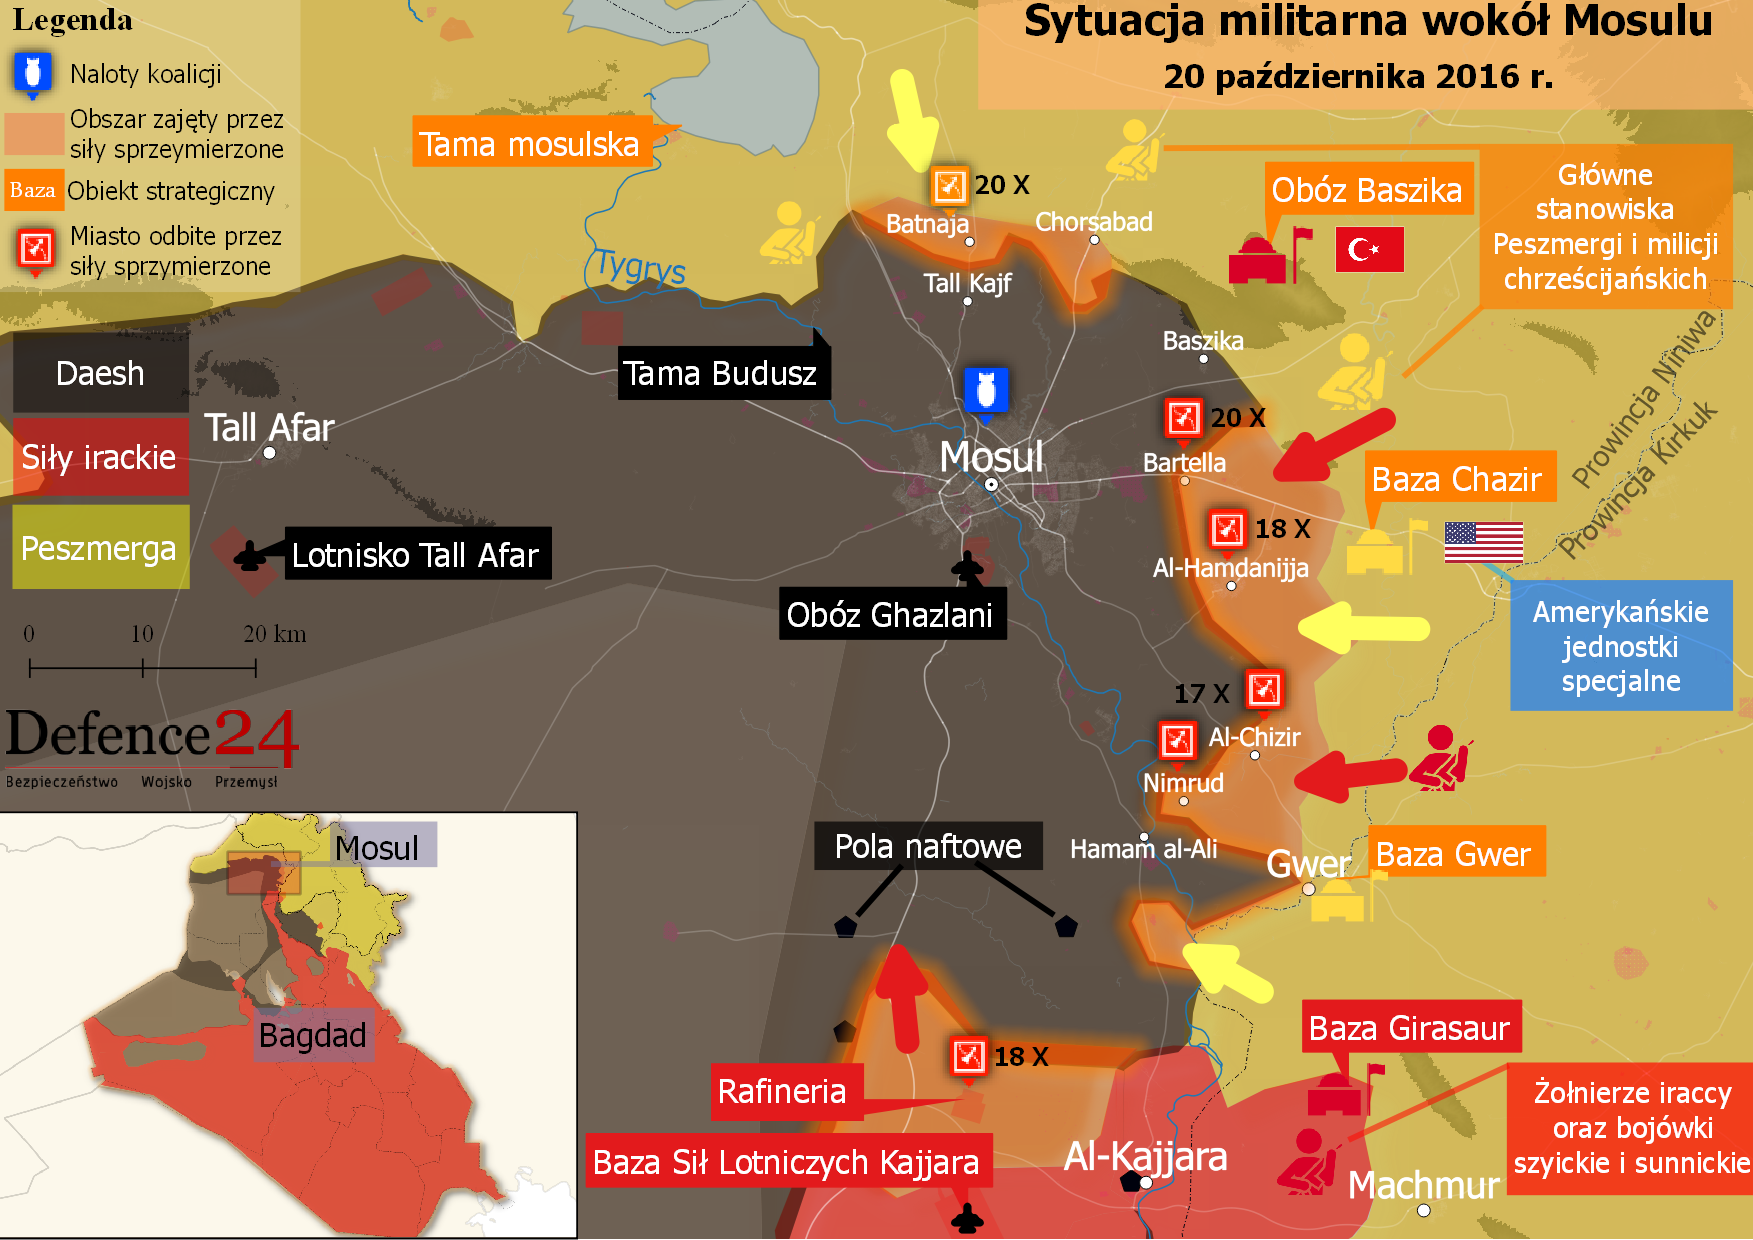 Sytuacja militarna wokół Mosulu - 20 października 2016r. Mapa: Defence24.pl